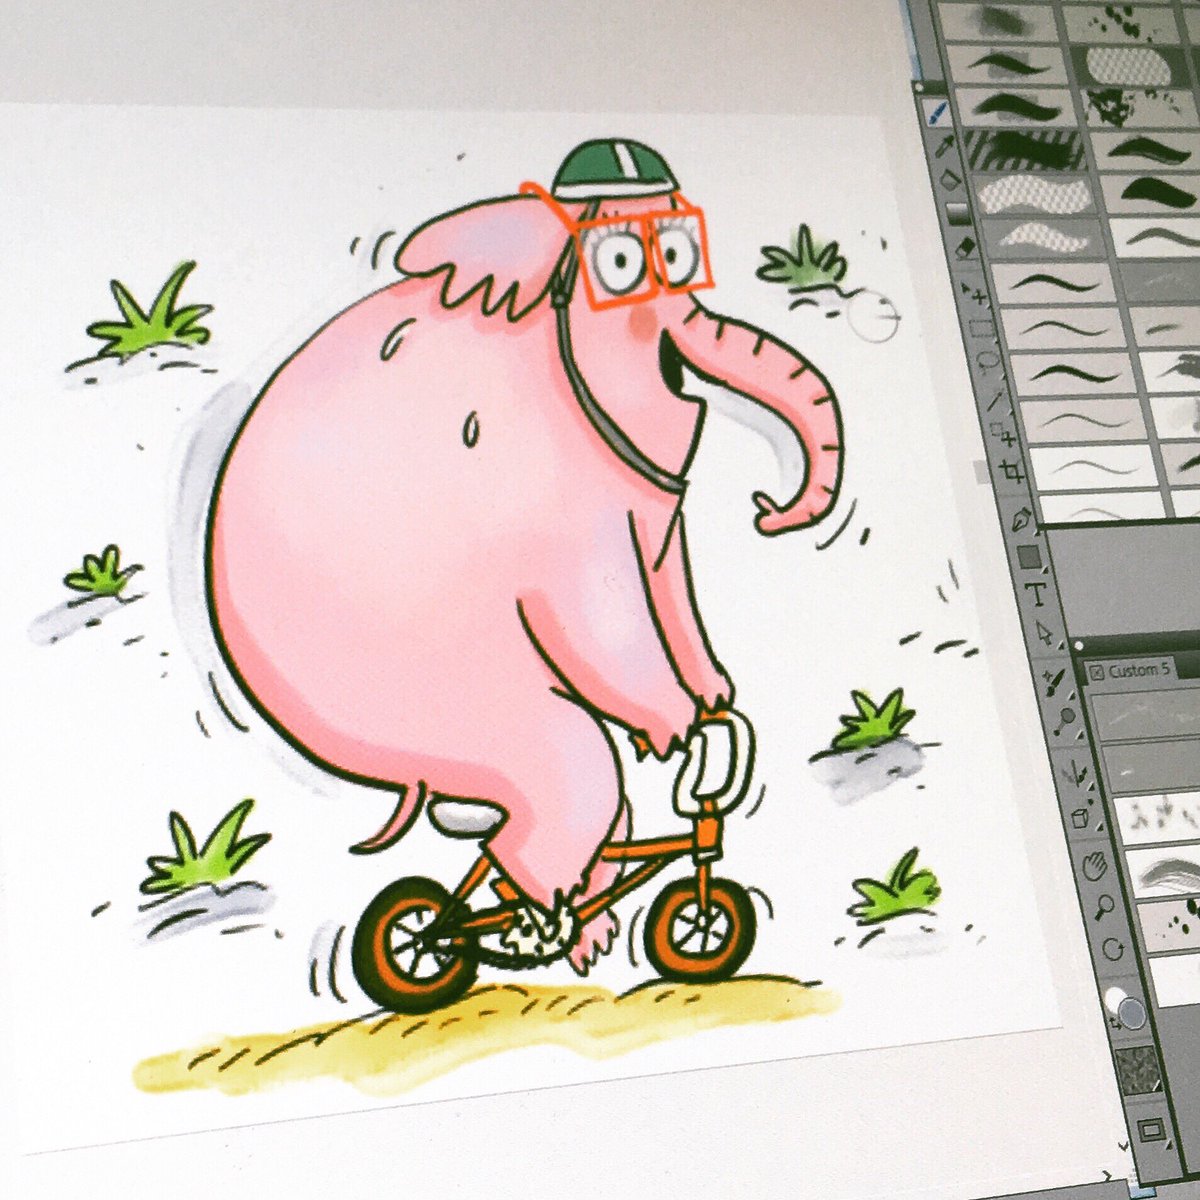 Something for #worldbicycleday #elephantonbike #elephant #bicycleriding #childrensillustration #kidlitillustrator #kidlitillustration #corelpainter #illustration #cartoon #cartoonelephant #bicycle